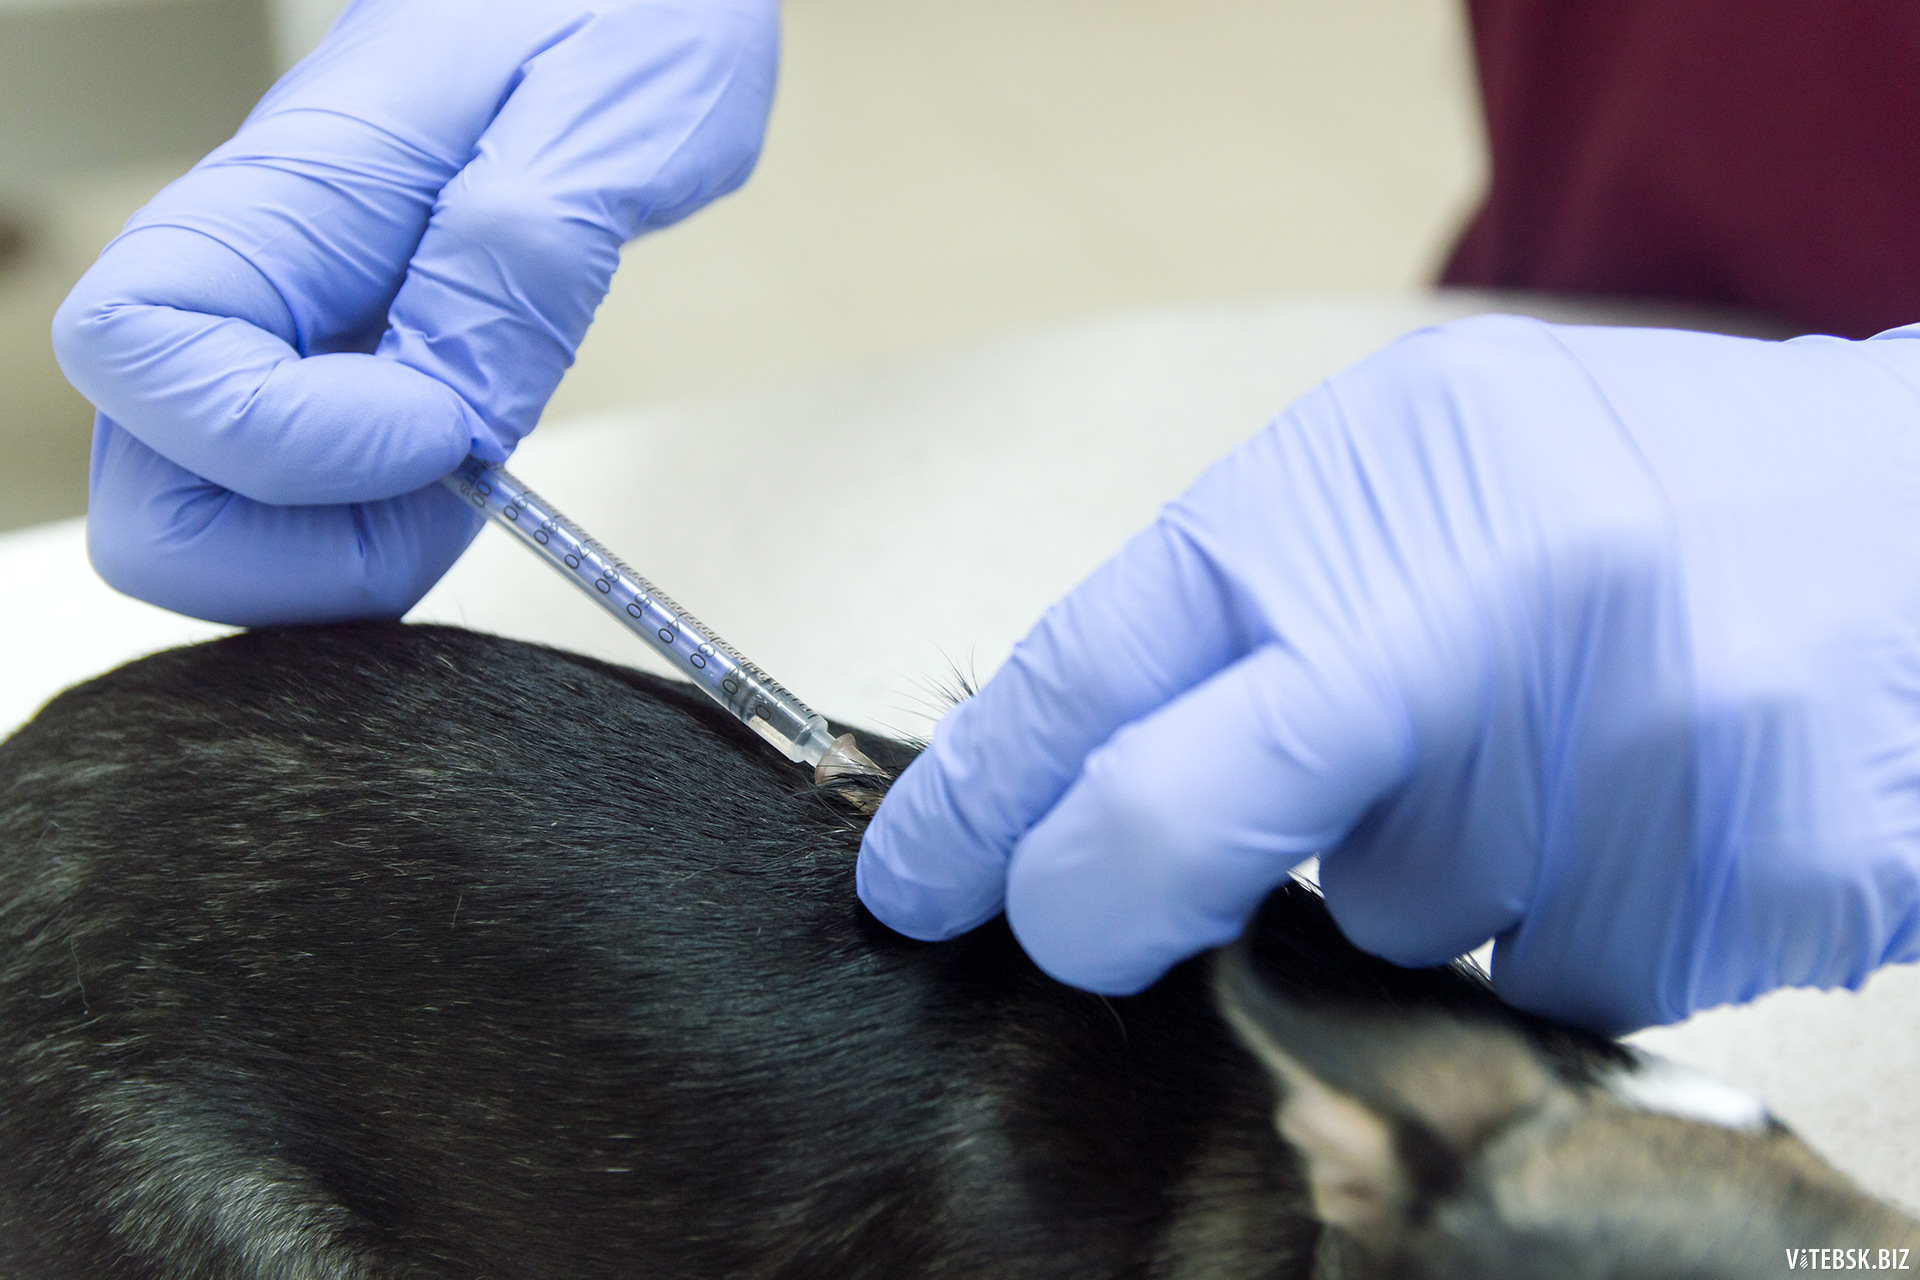 Где сделать прививку от бешенства собаке. Вакцинация собак. Прививки животным от бешенства. Прививка собаке. Вакцинация Солаки от беше.